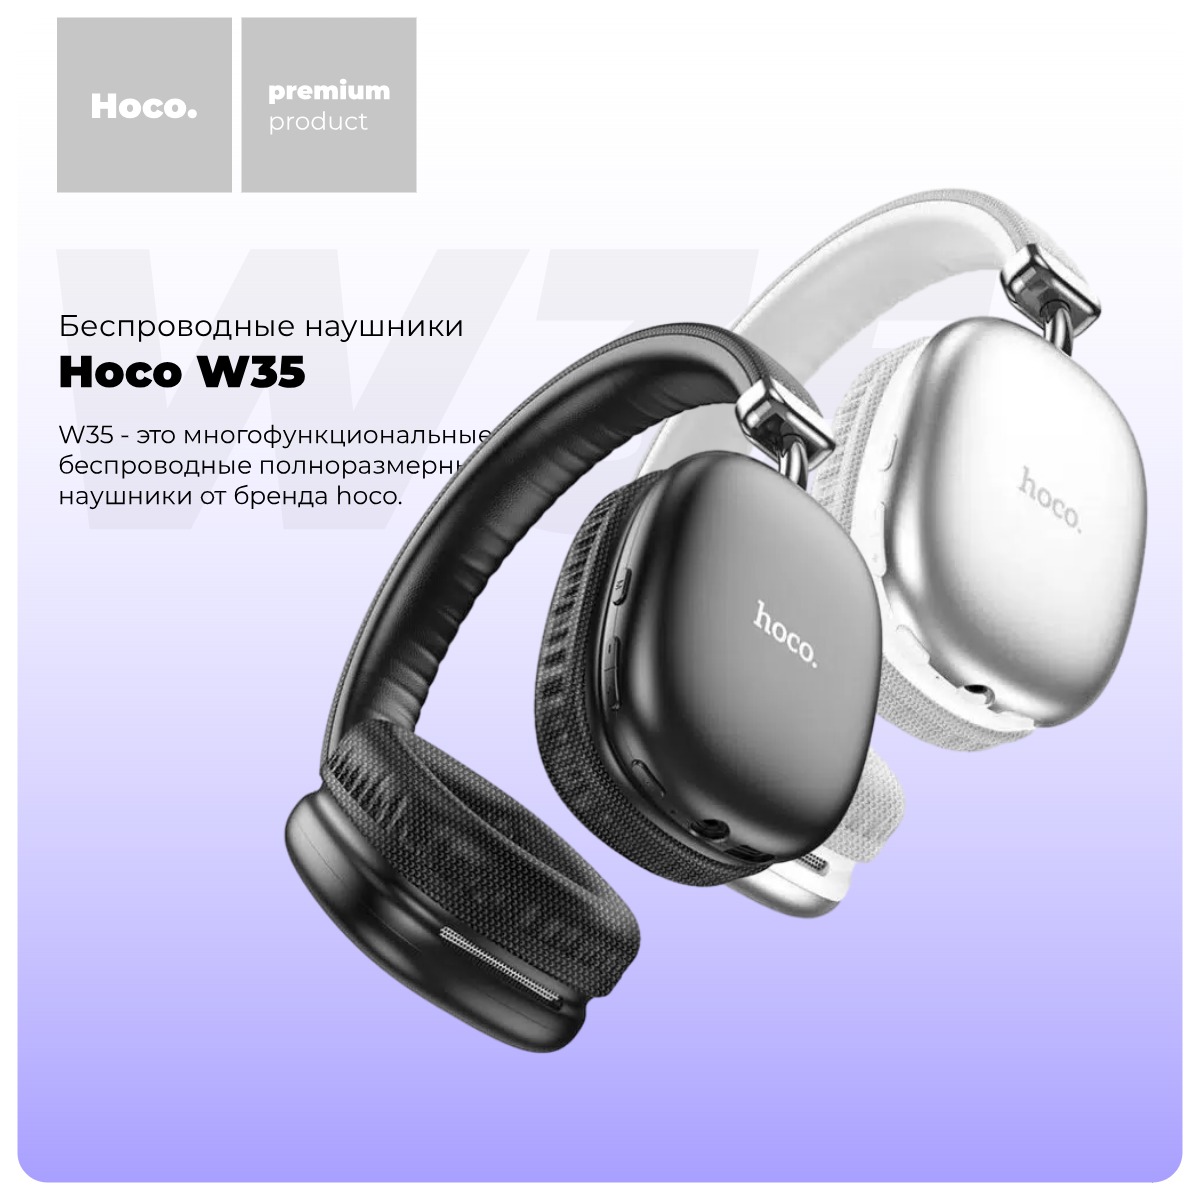 Hoco-W35-01